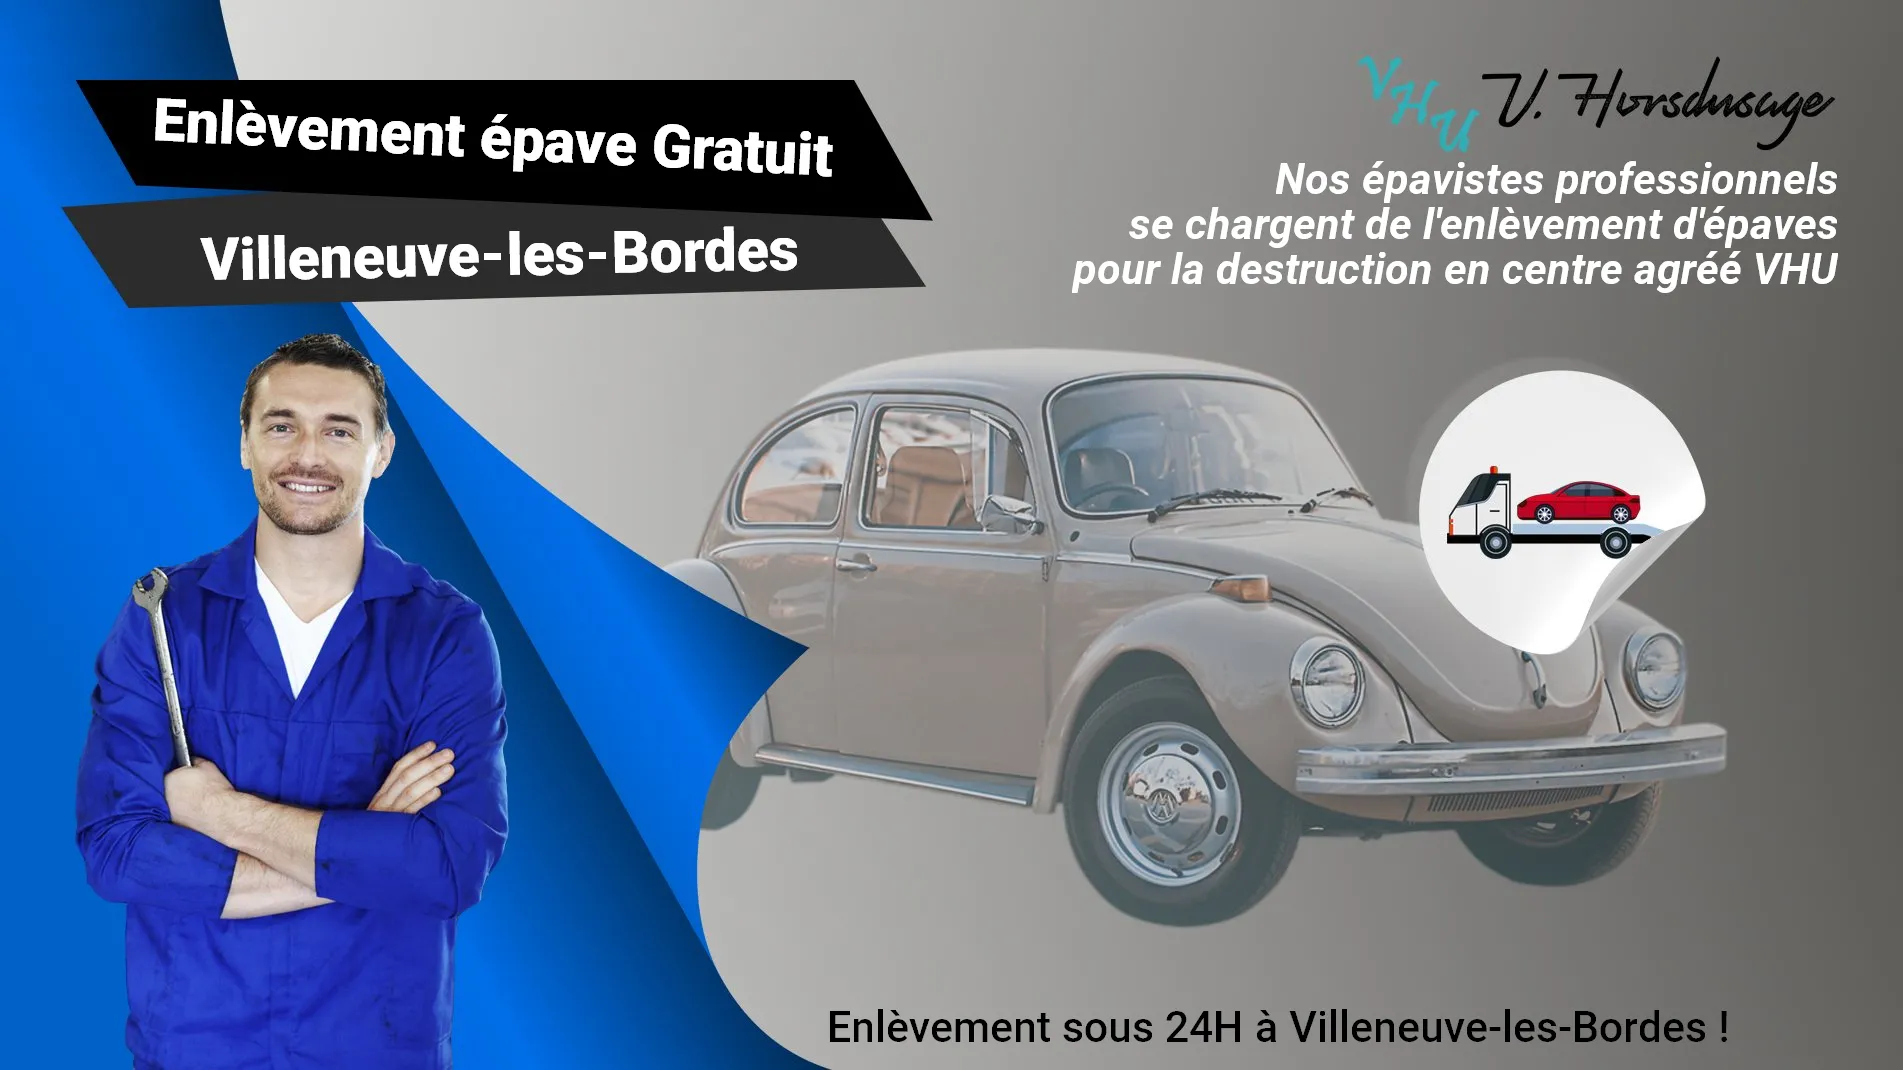 Pour un enlèvement gratuit à Villeneuve-les-Bordes, contactez nos épavistes agréé VHU